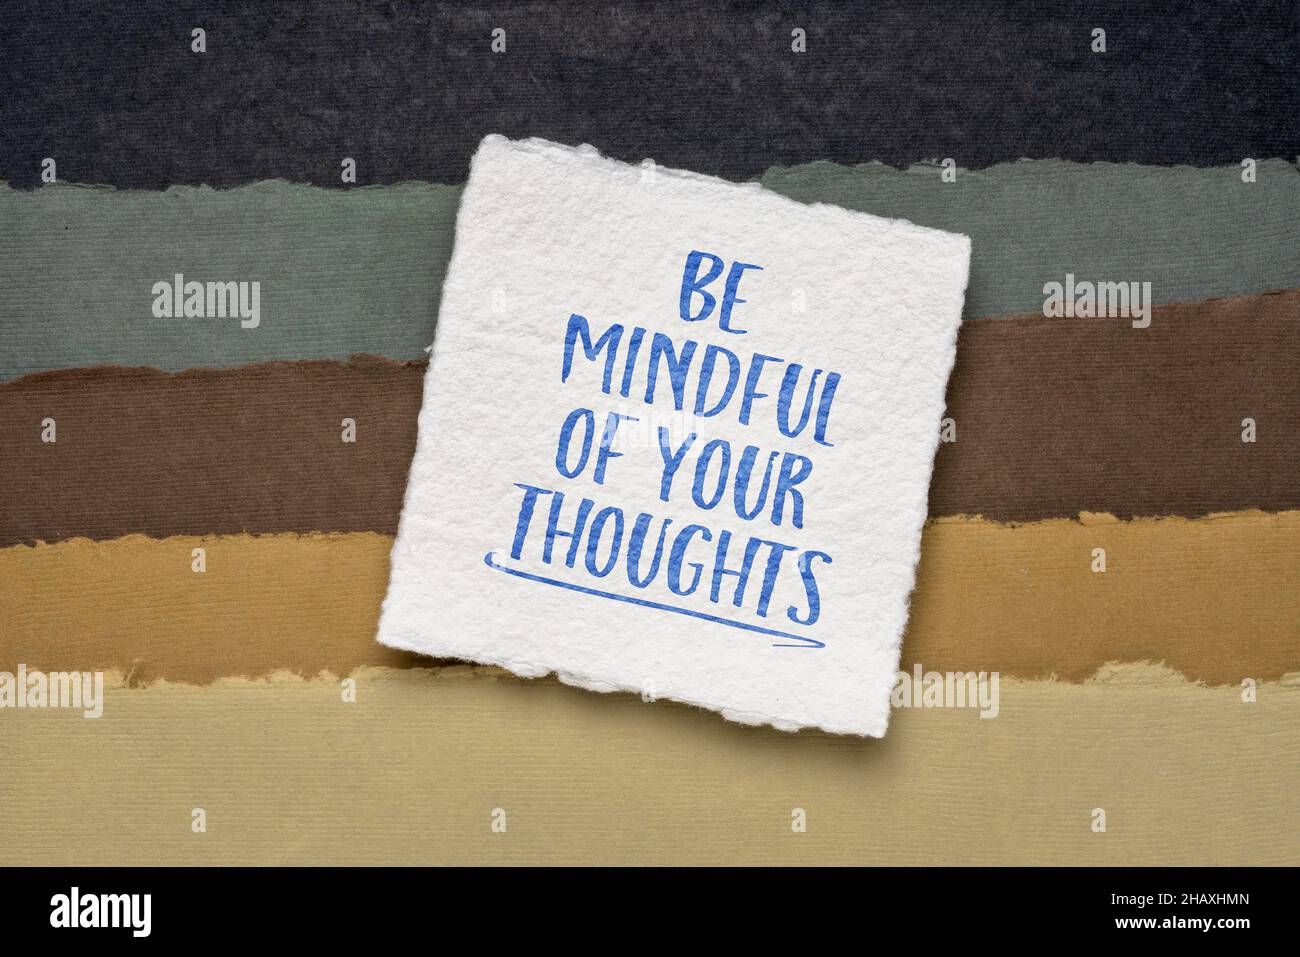 Achten Sie auf Ihre Gedanken inspirierende Erinnerung - Handschrift auf einem handgeschöpften Papier, Achtsamkeit, positives Denken und persönliches Entwicklungskonzept Stockfoto